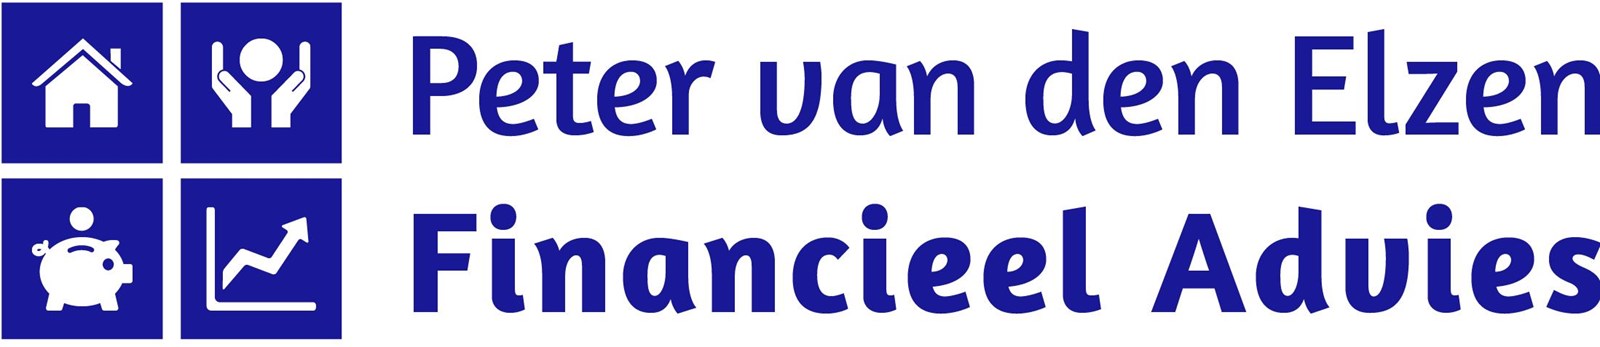 Logo van Peter van den Elzen Financieel Advies